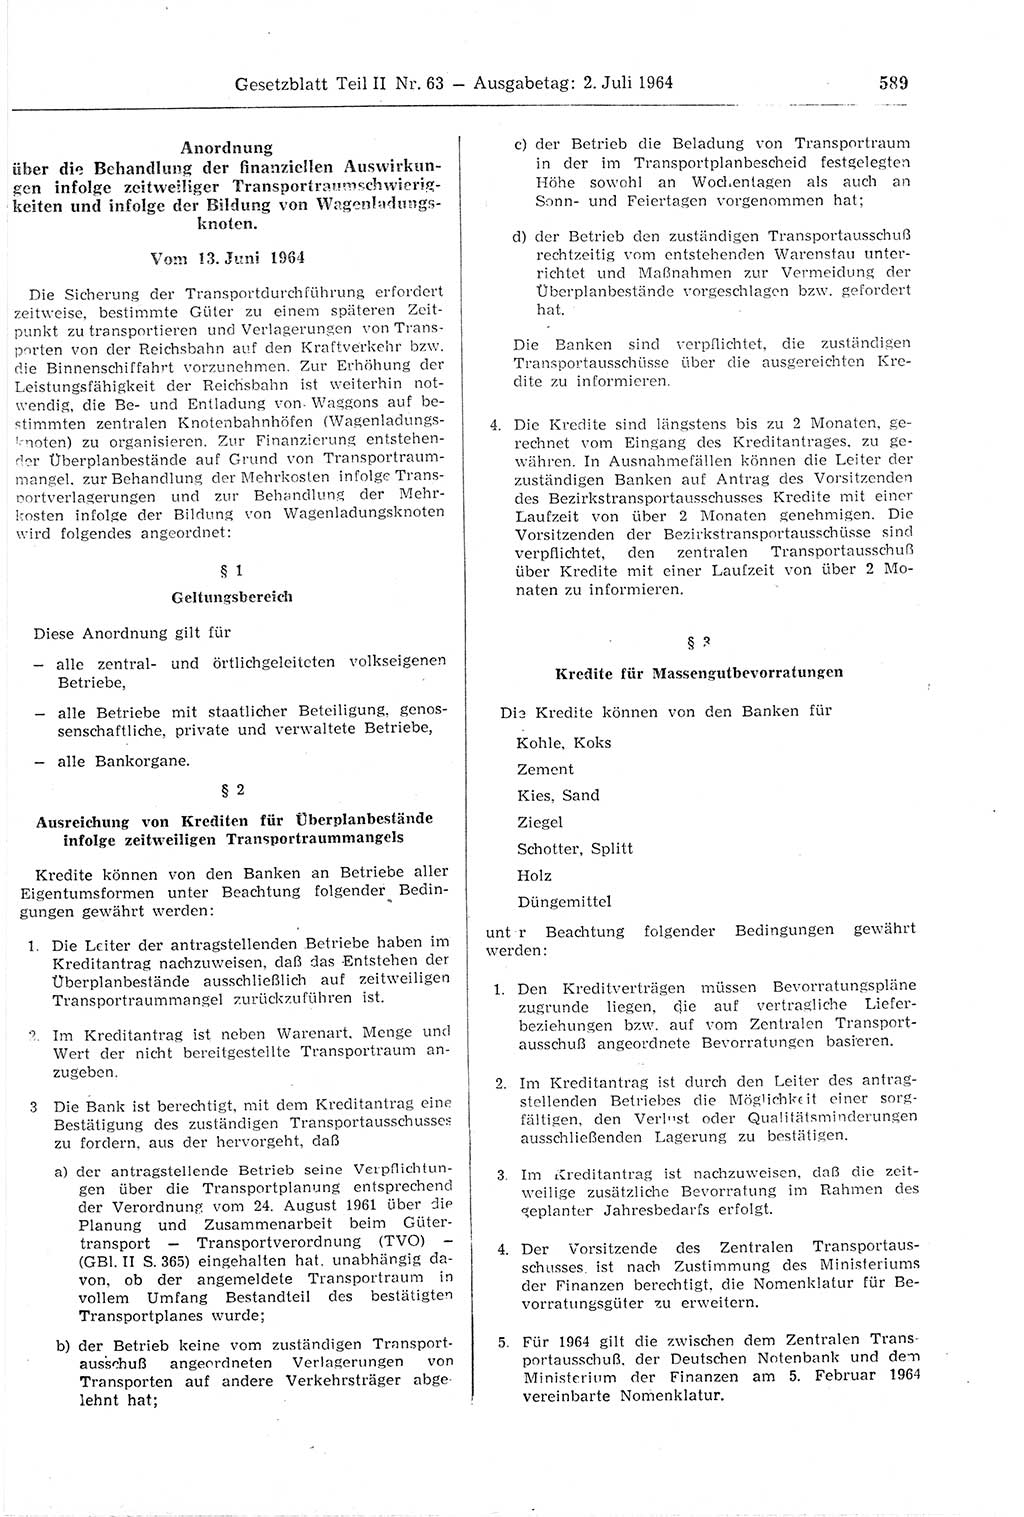 Gesetzblatt (GBl.) der Deutschen Demokratischen Republik (DDR) Teil ⅠⅠ 1964, Seite 589 (GBl. DDR ⅠⅠ 1964, S. 589)